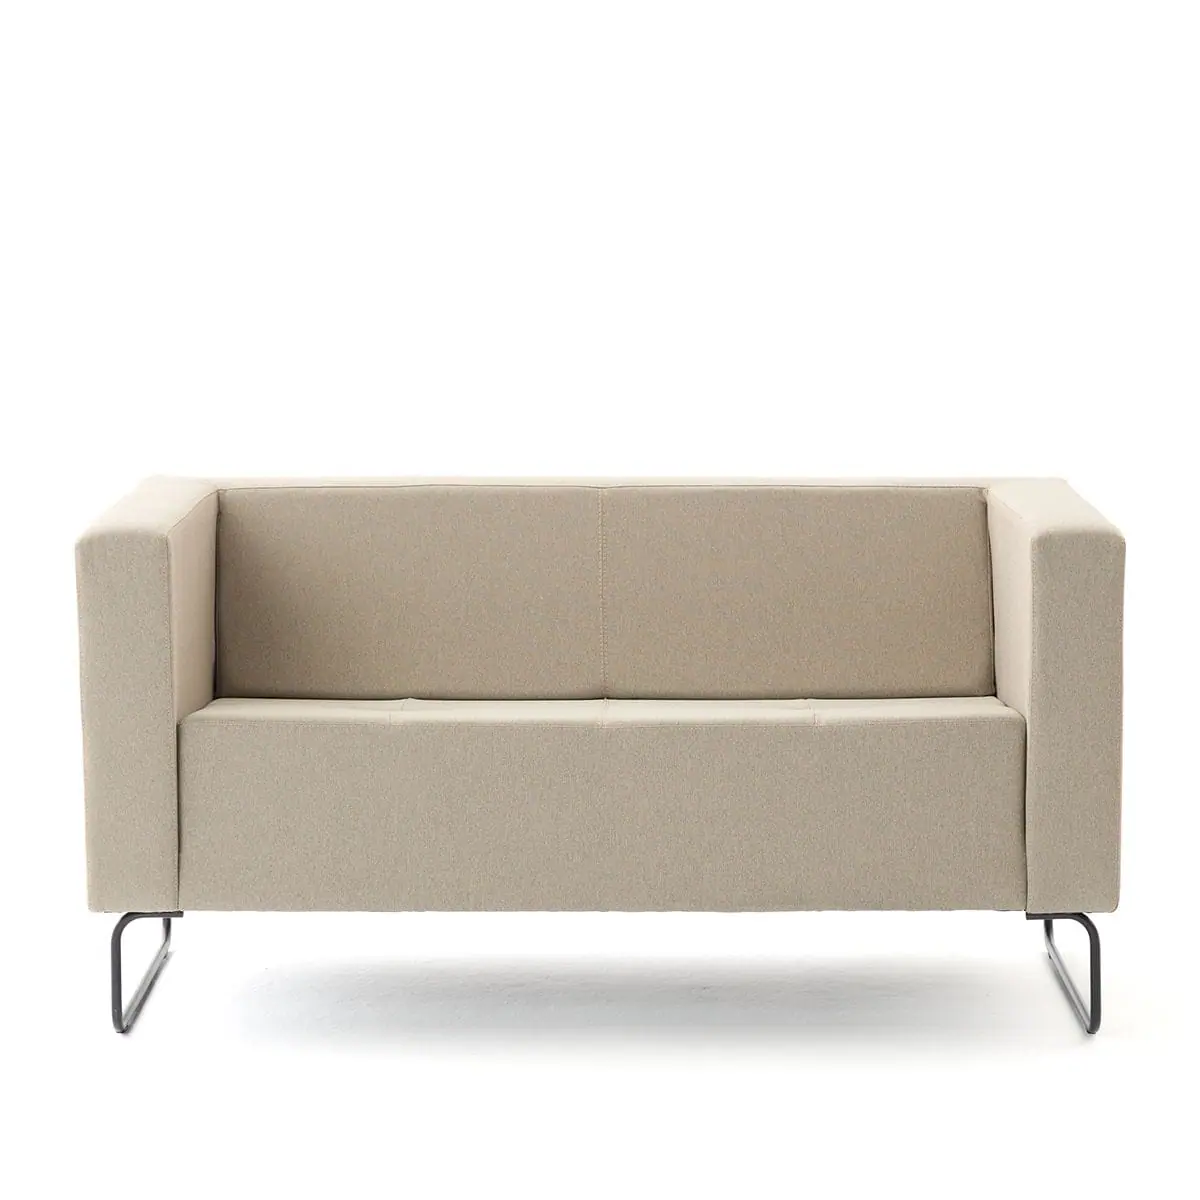 delaoliva-etna-soft-lounge-seating-005